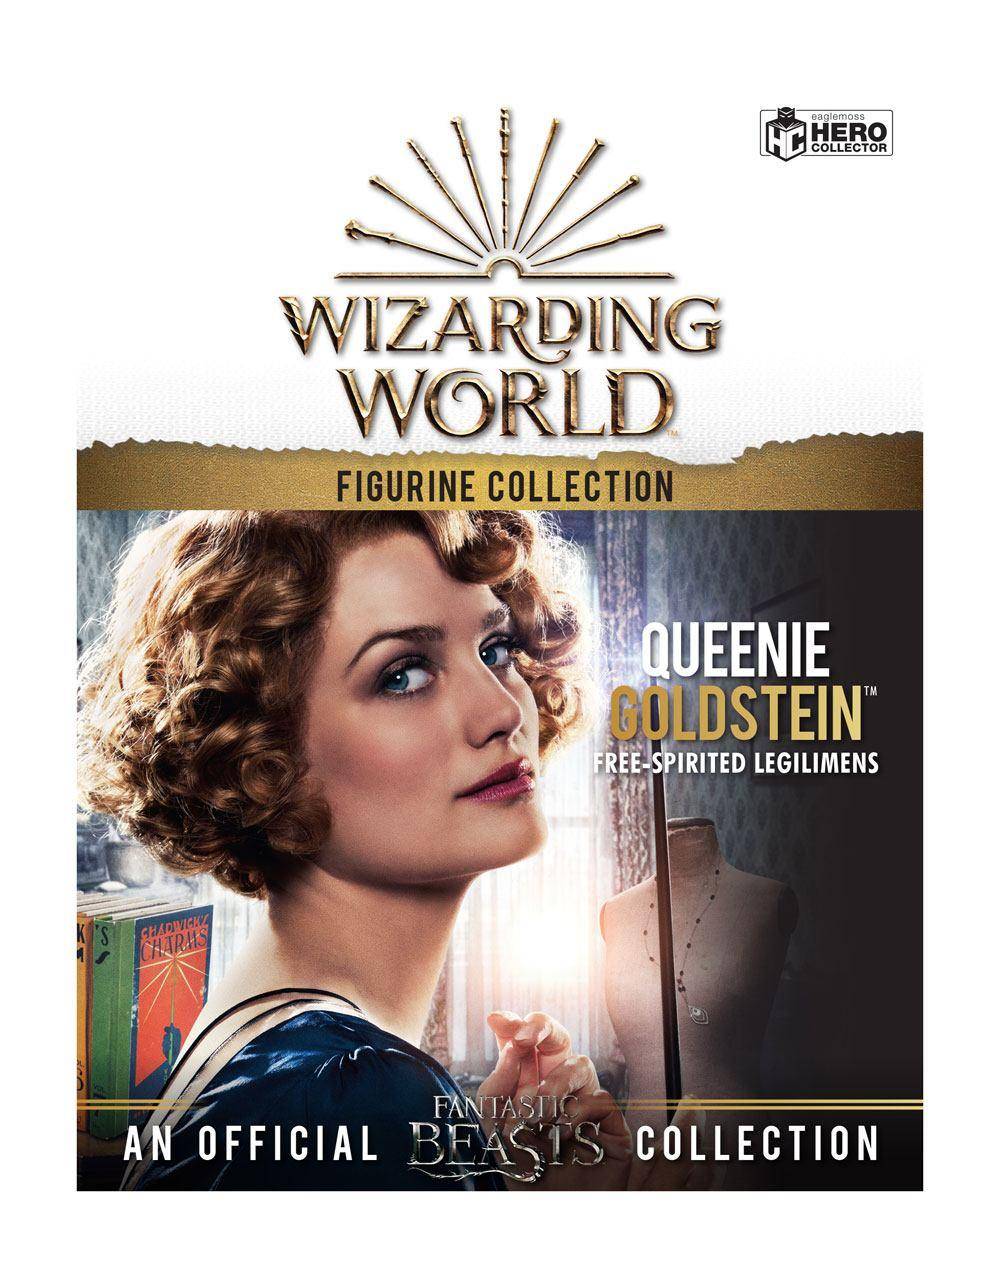 Wizarding World Figur Collection 1/16 Queenie Goldstein 12 cm